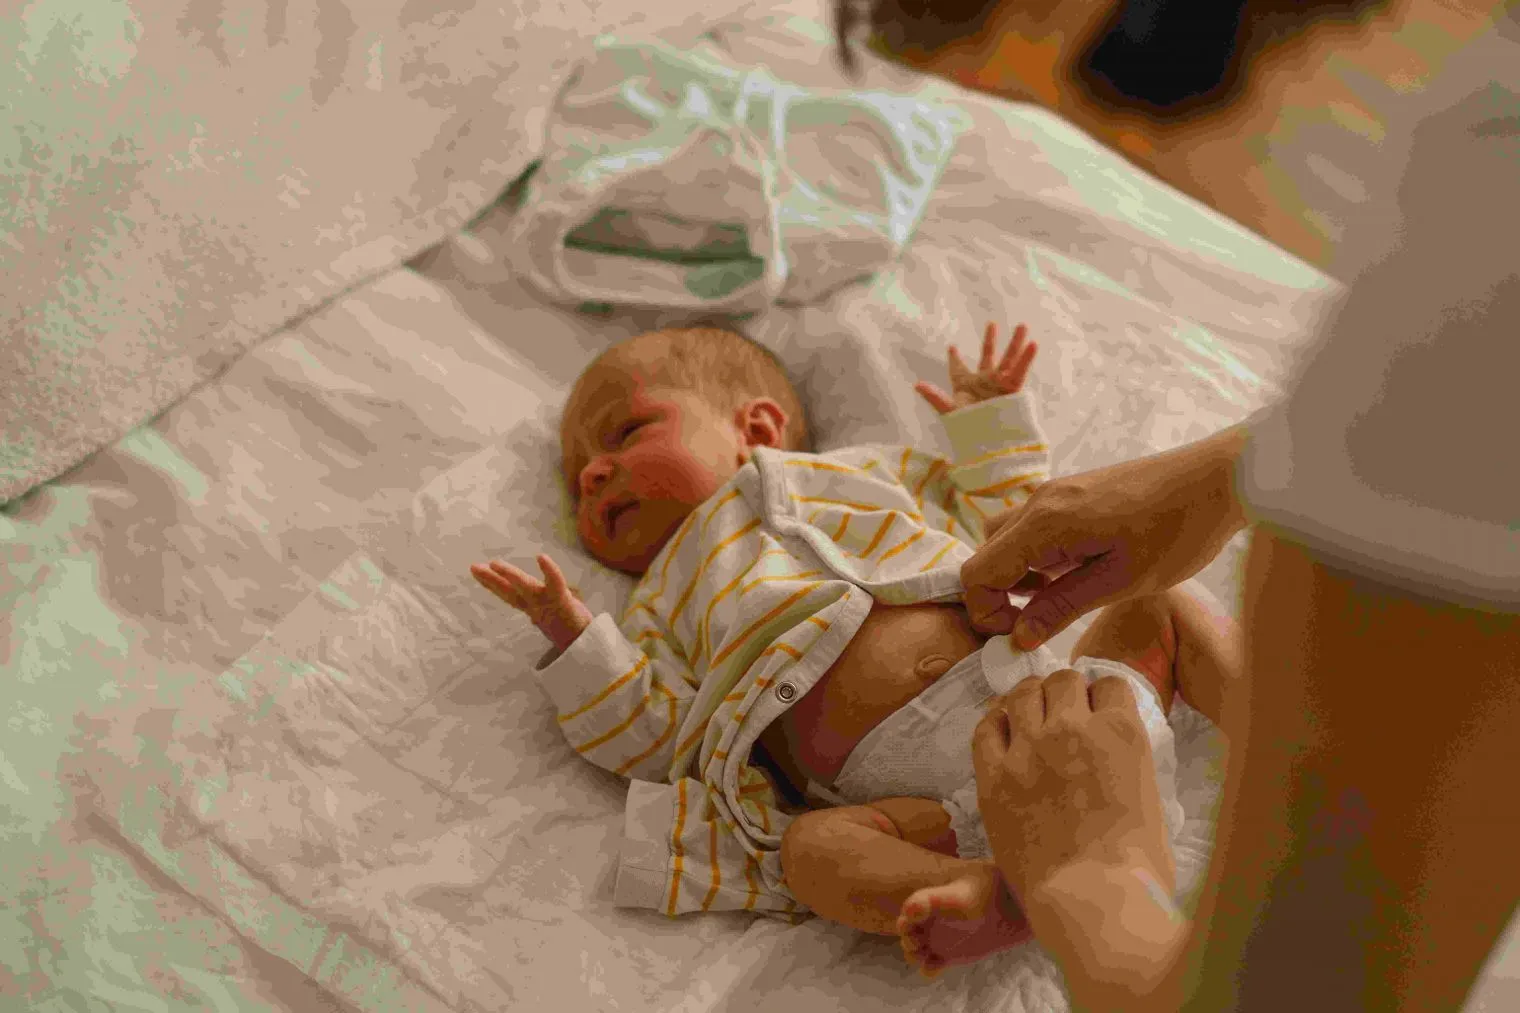 Panduan Mengganti Popok Bayi dengan Baik dan Benar